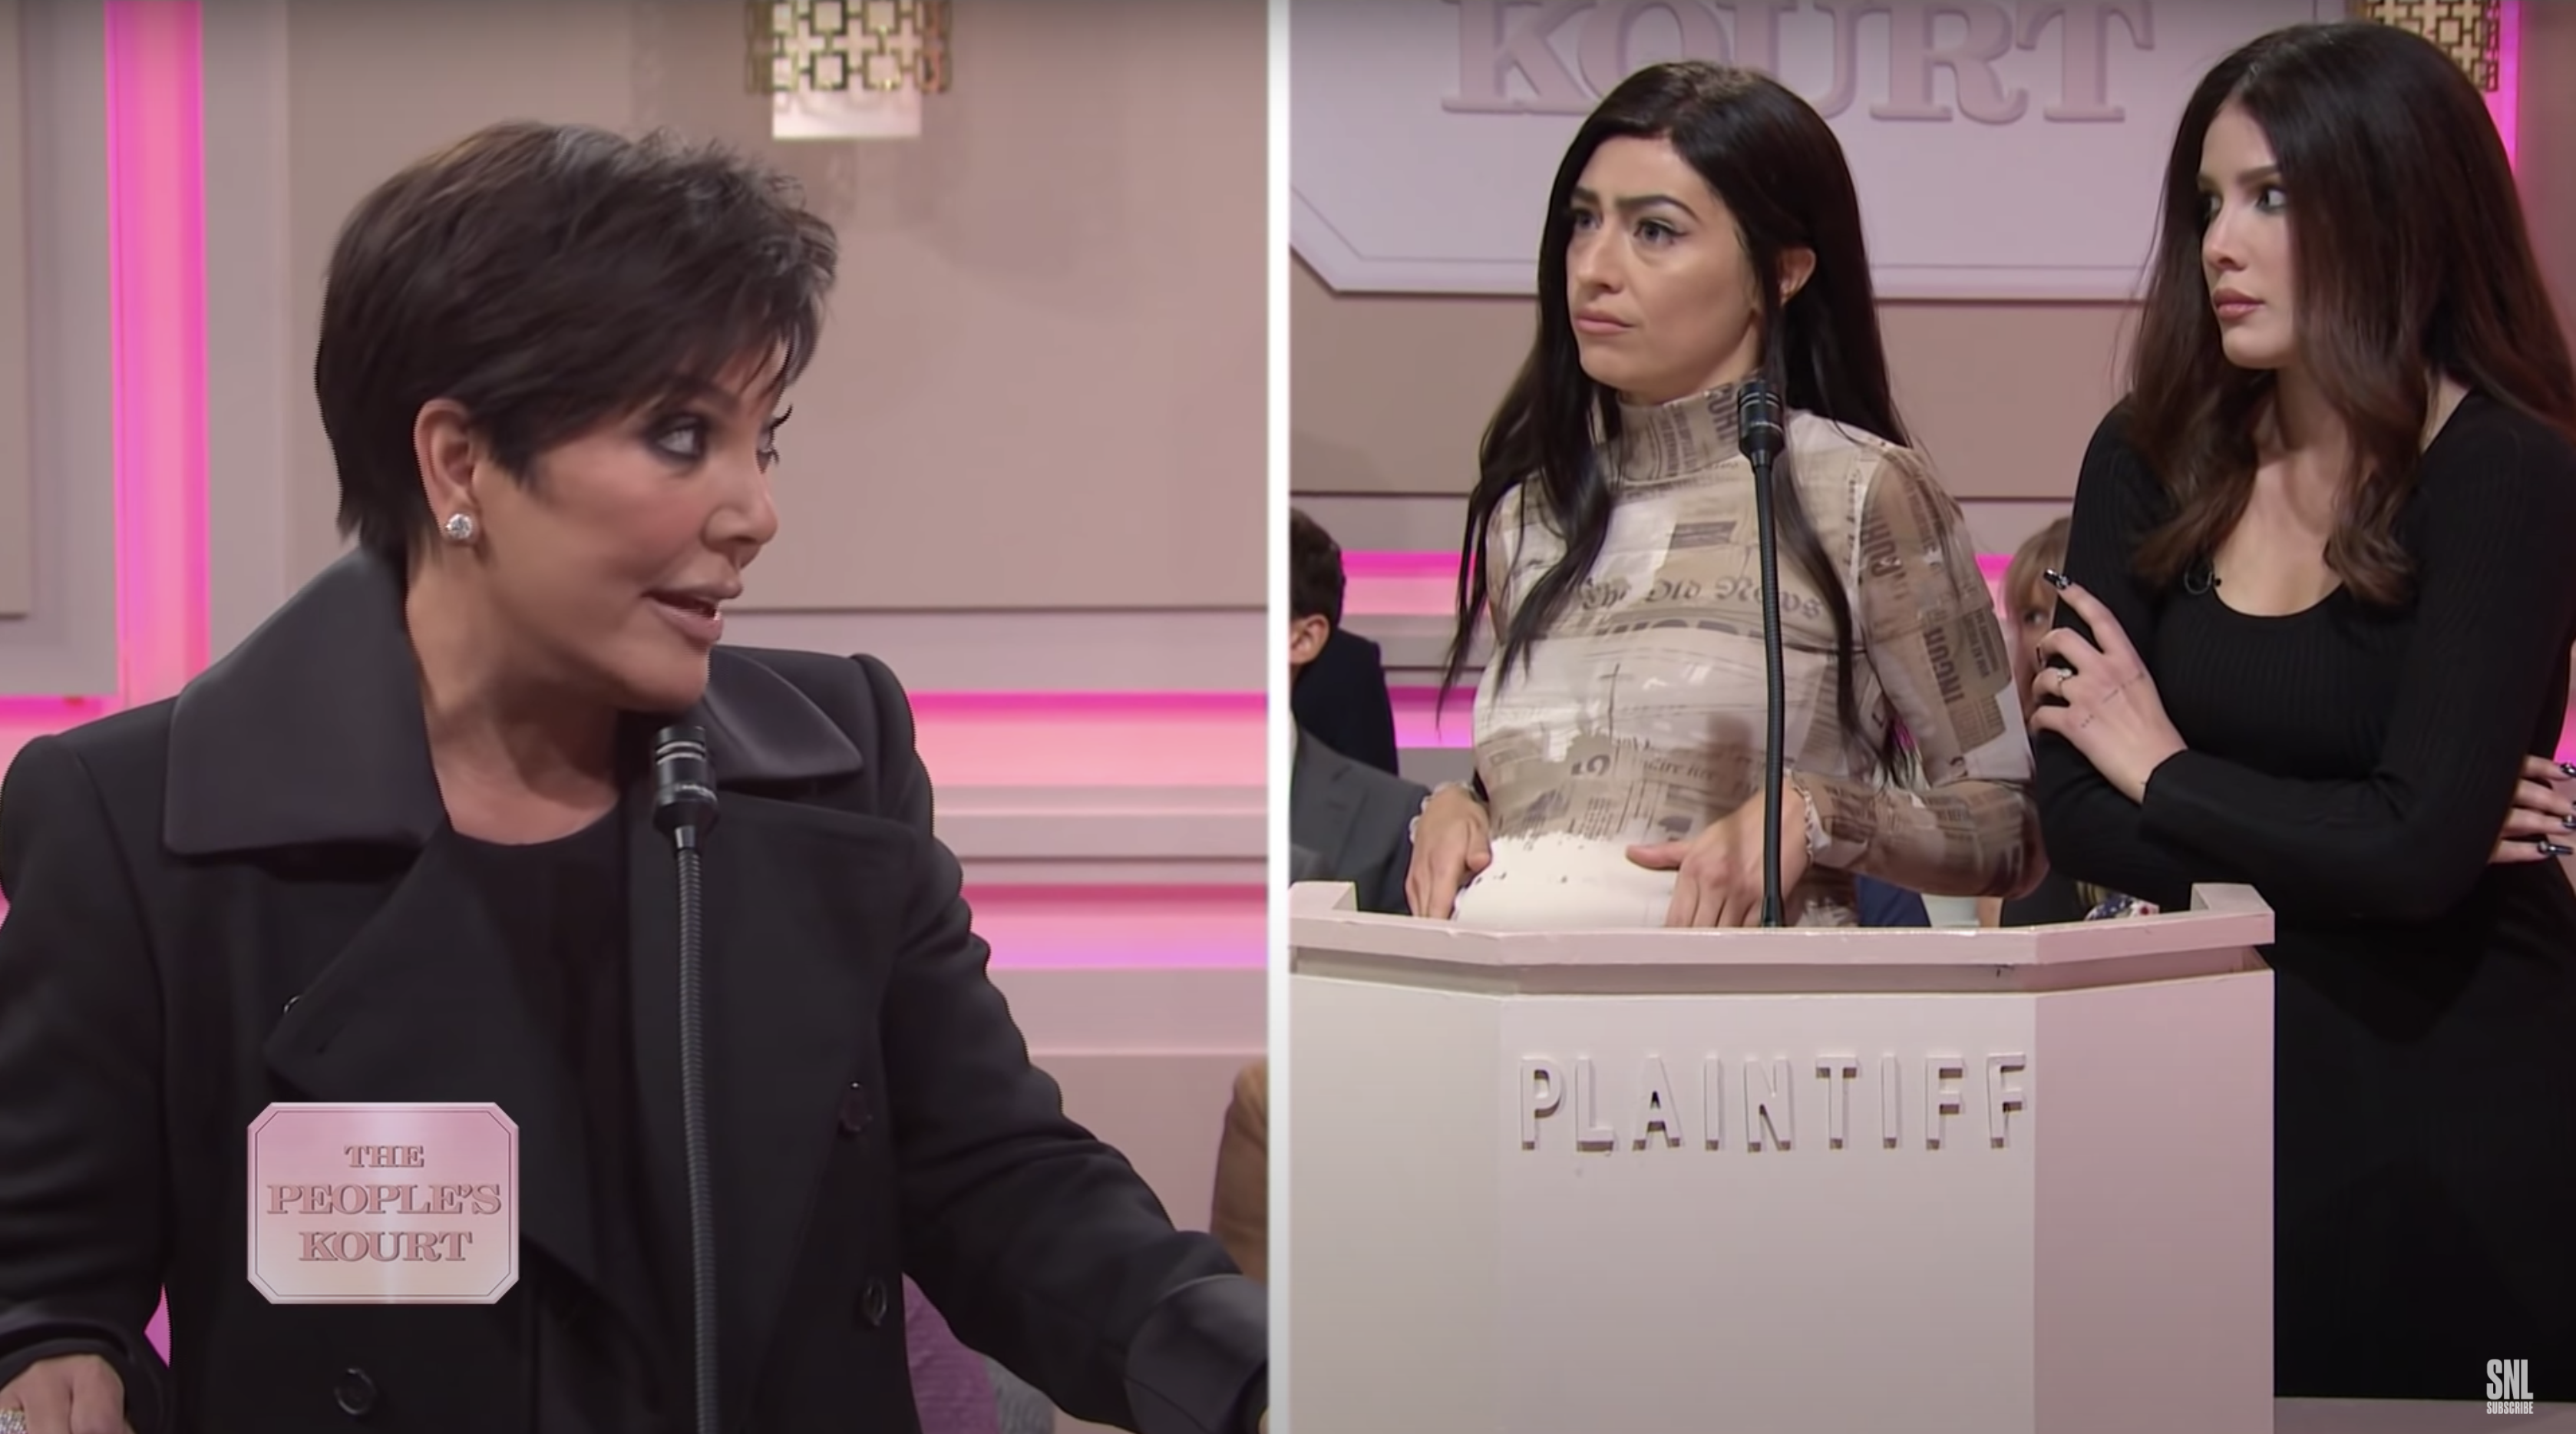 La imitación de Kendall Jenner de Halsey en "Saturday Night Live" es ridículamente precisa